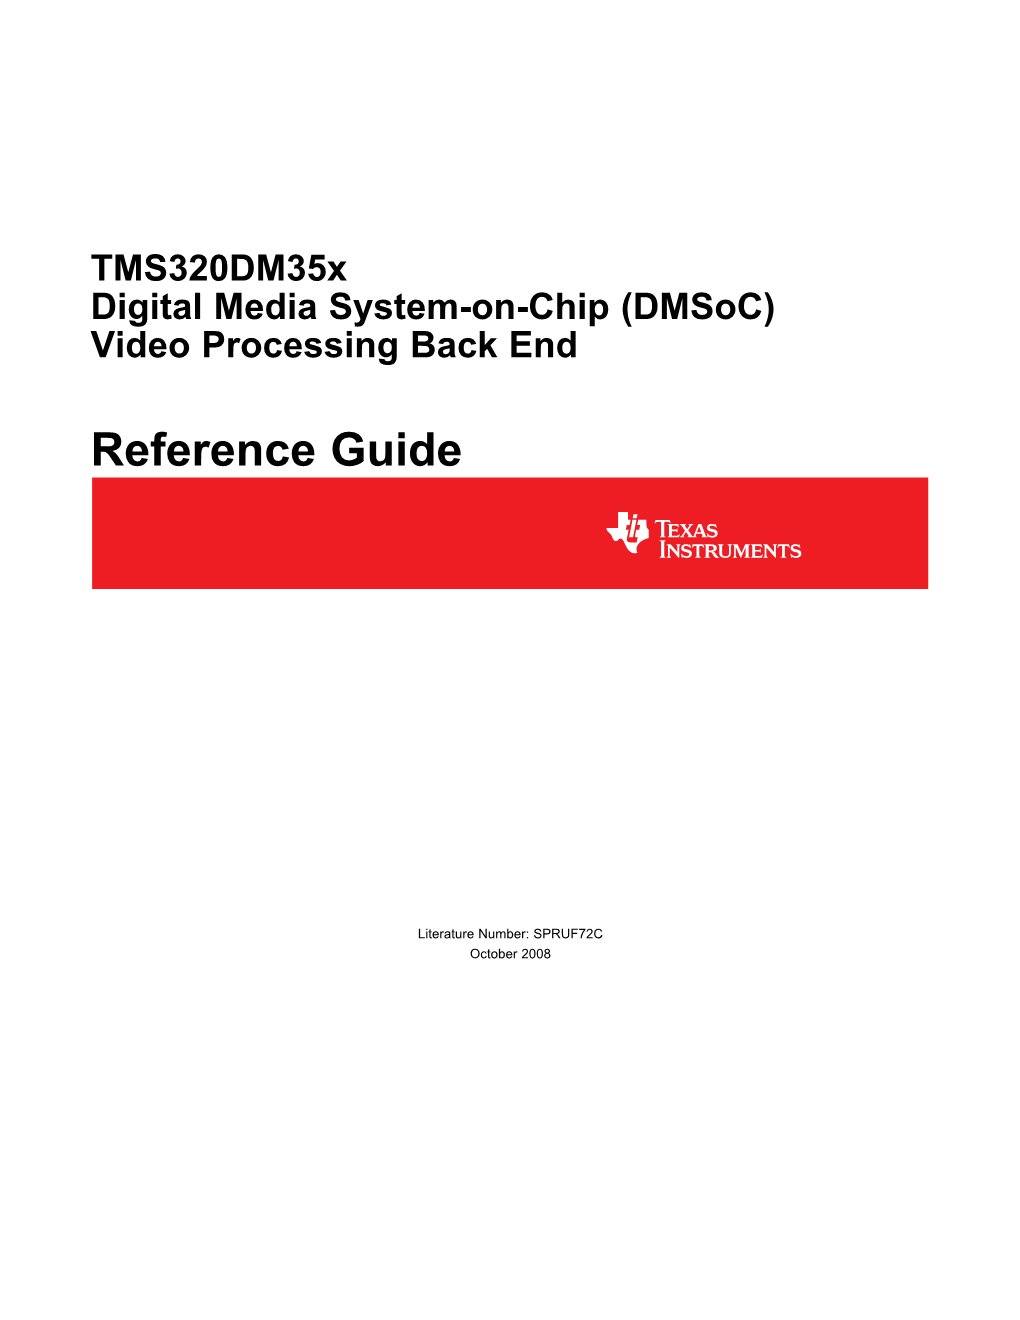 Tms320dm35x Digital Media System-On-Chip (Dmsoc) Video Processing Back End